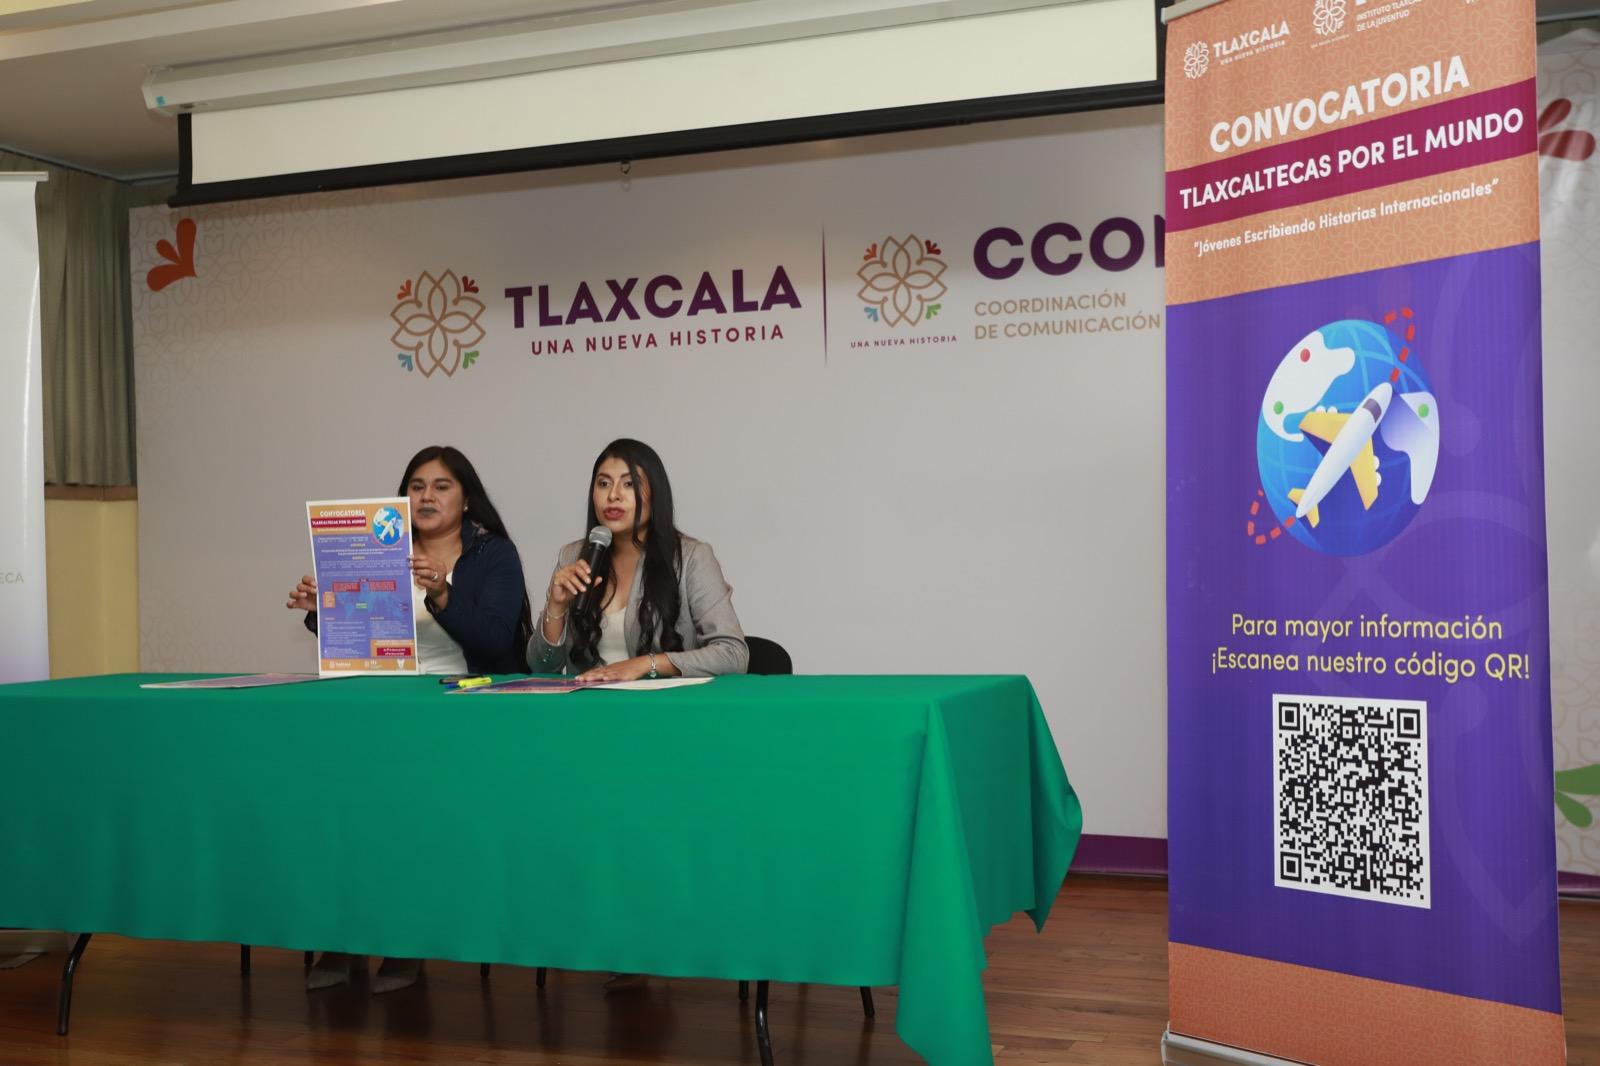 Presenta ITJ programa de voluntariado “Tlaxcaltecas Por El Mundo”